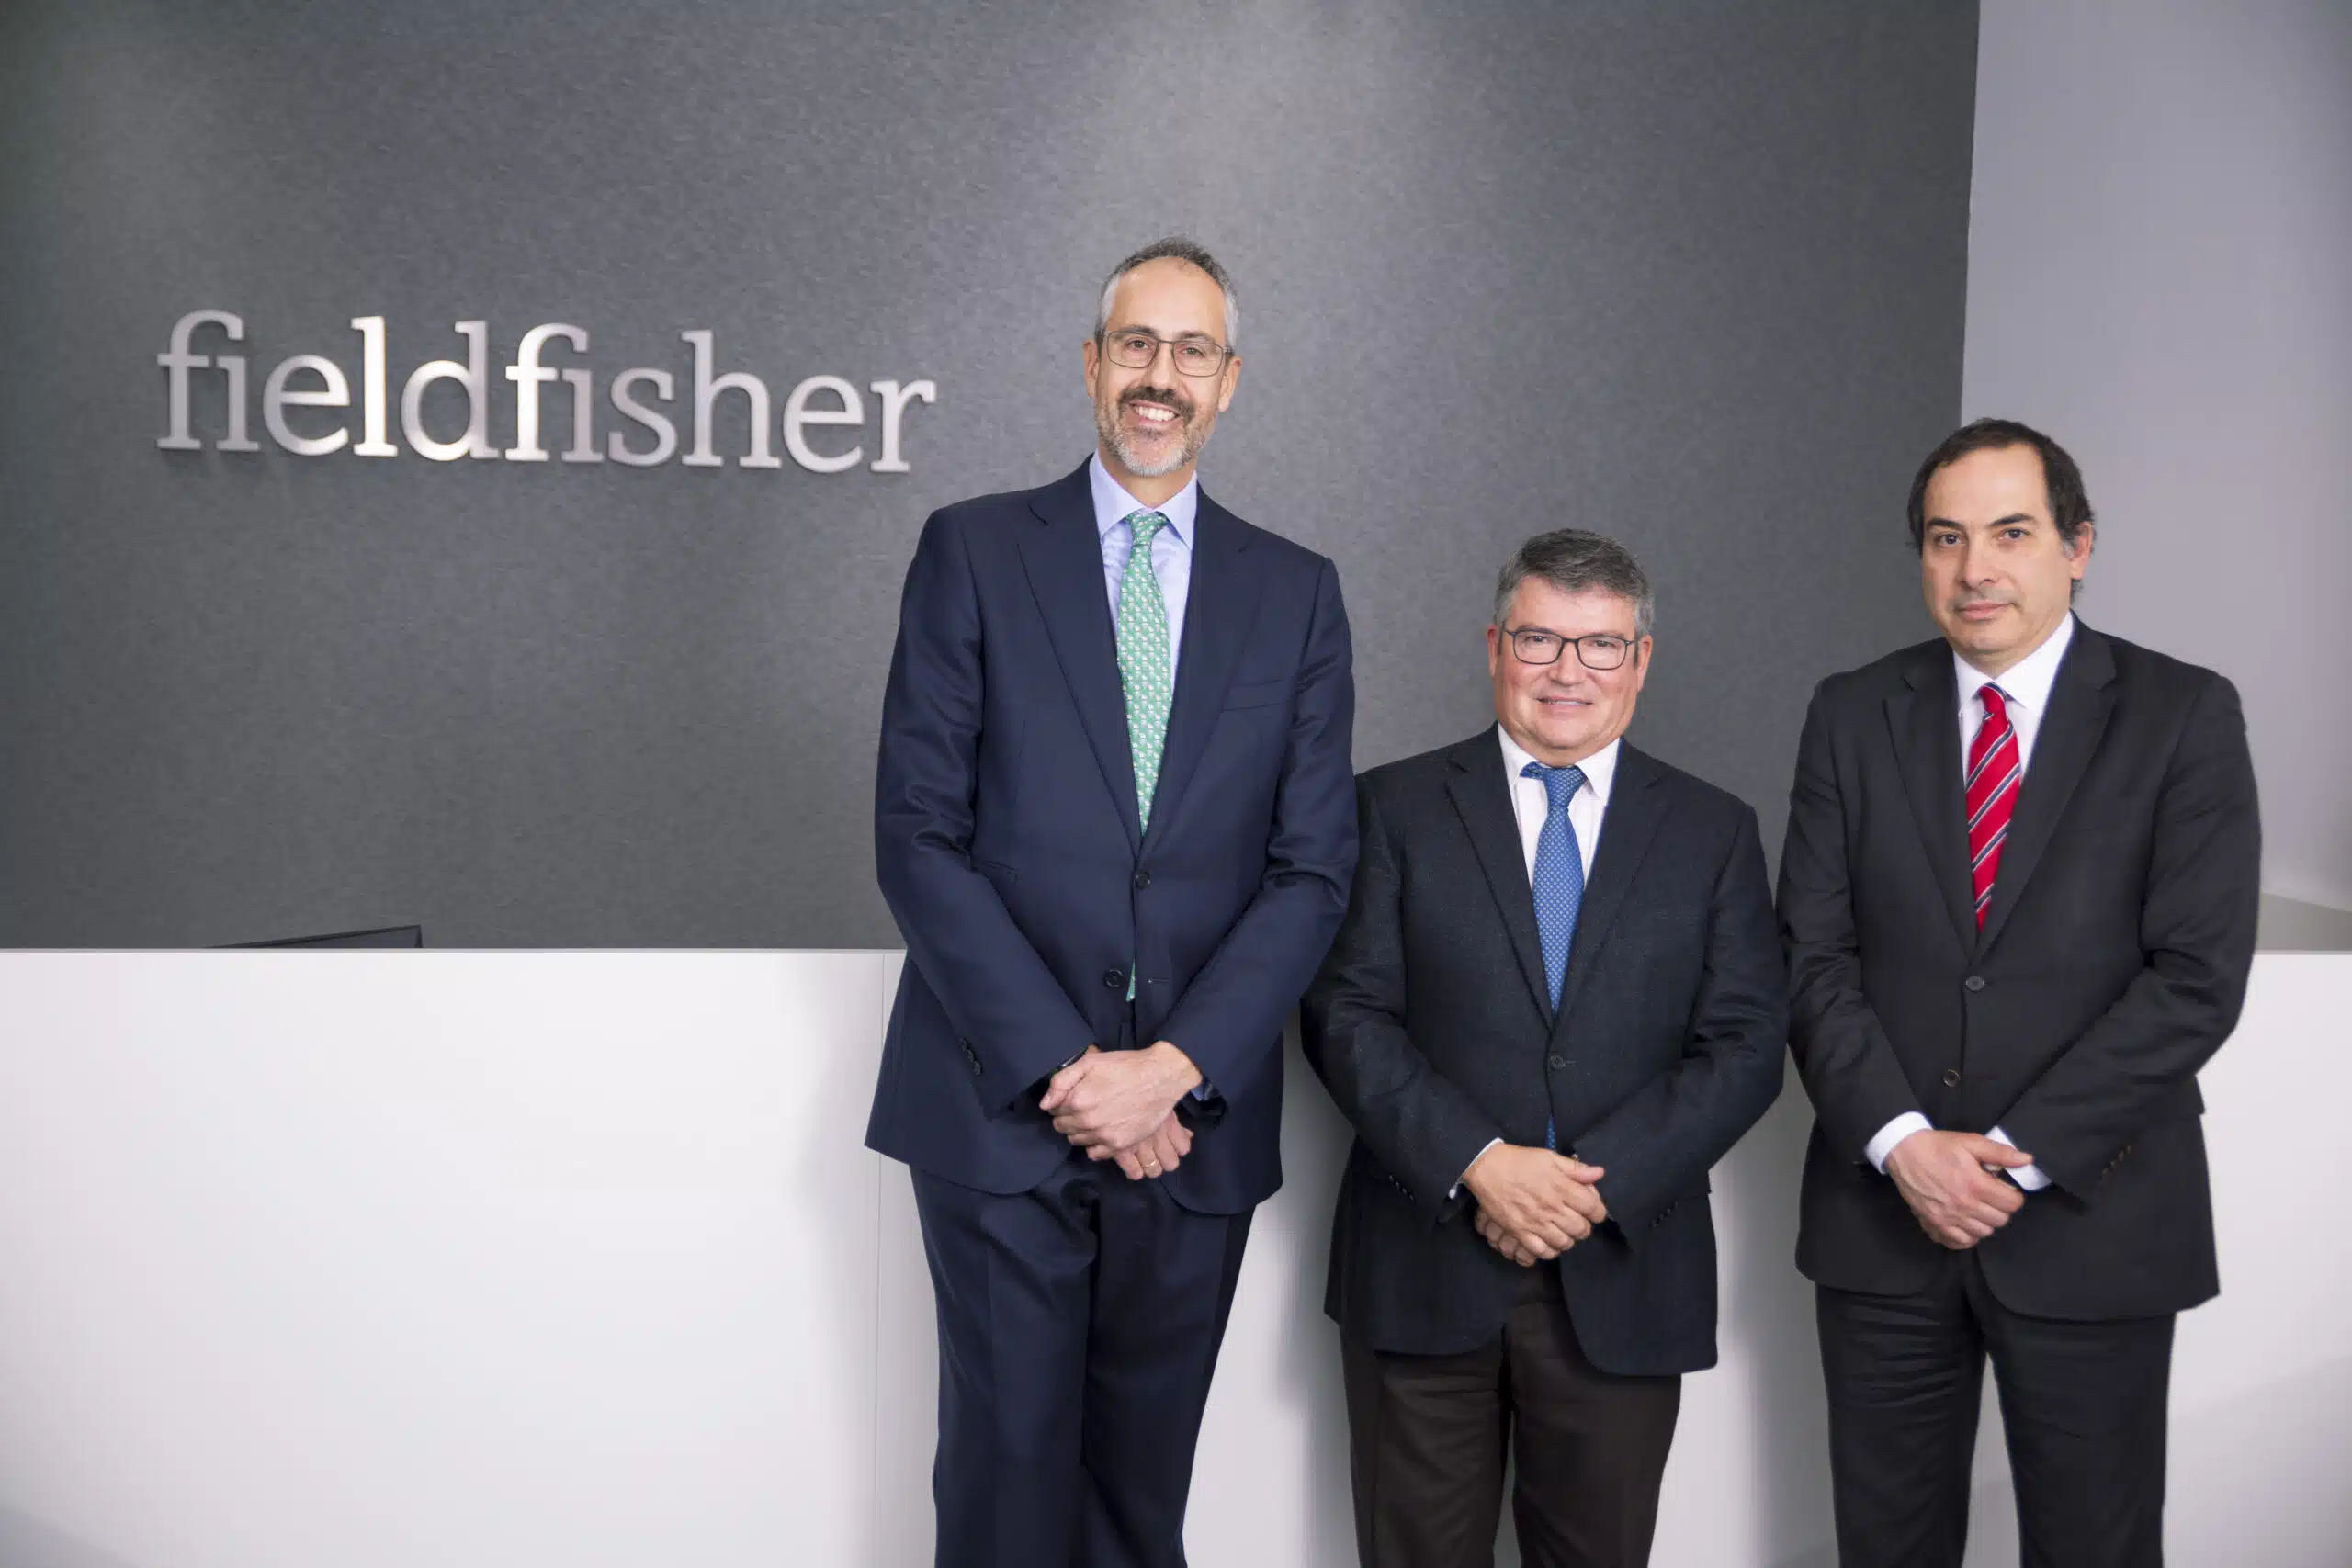 Fieldfisher ficha a Pedro Claros como socio y máximo responsable del área de arbitraje de su oficina de Madrid,